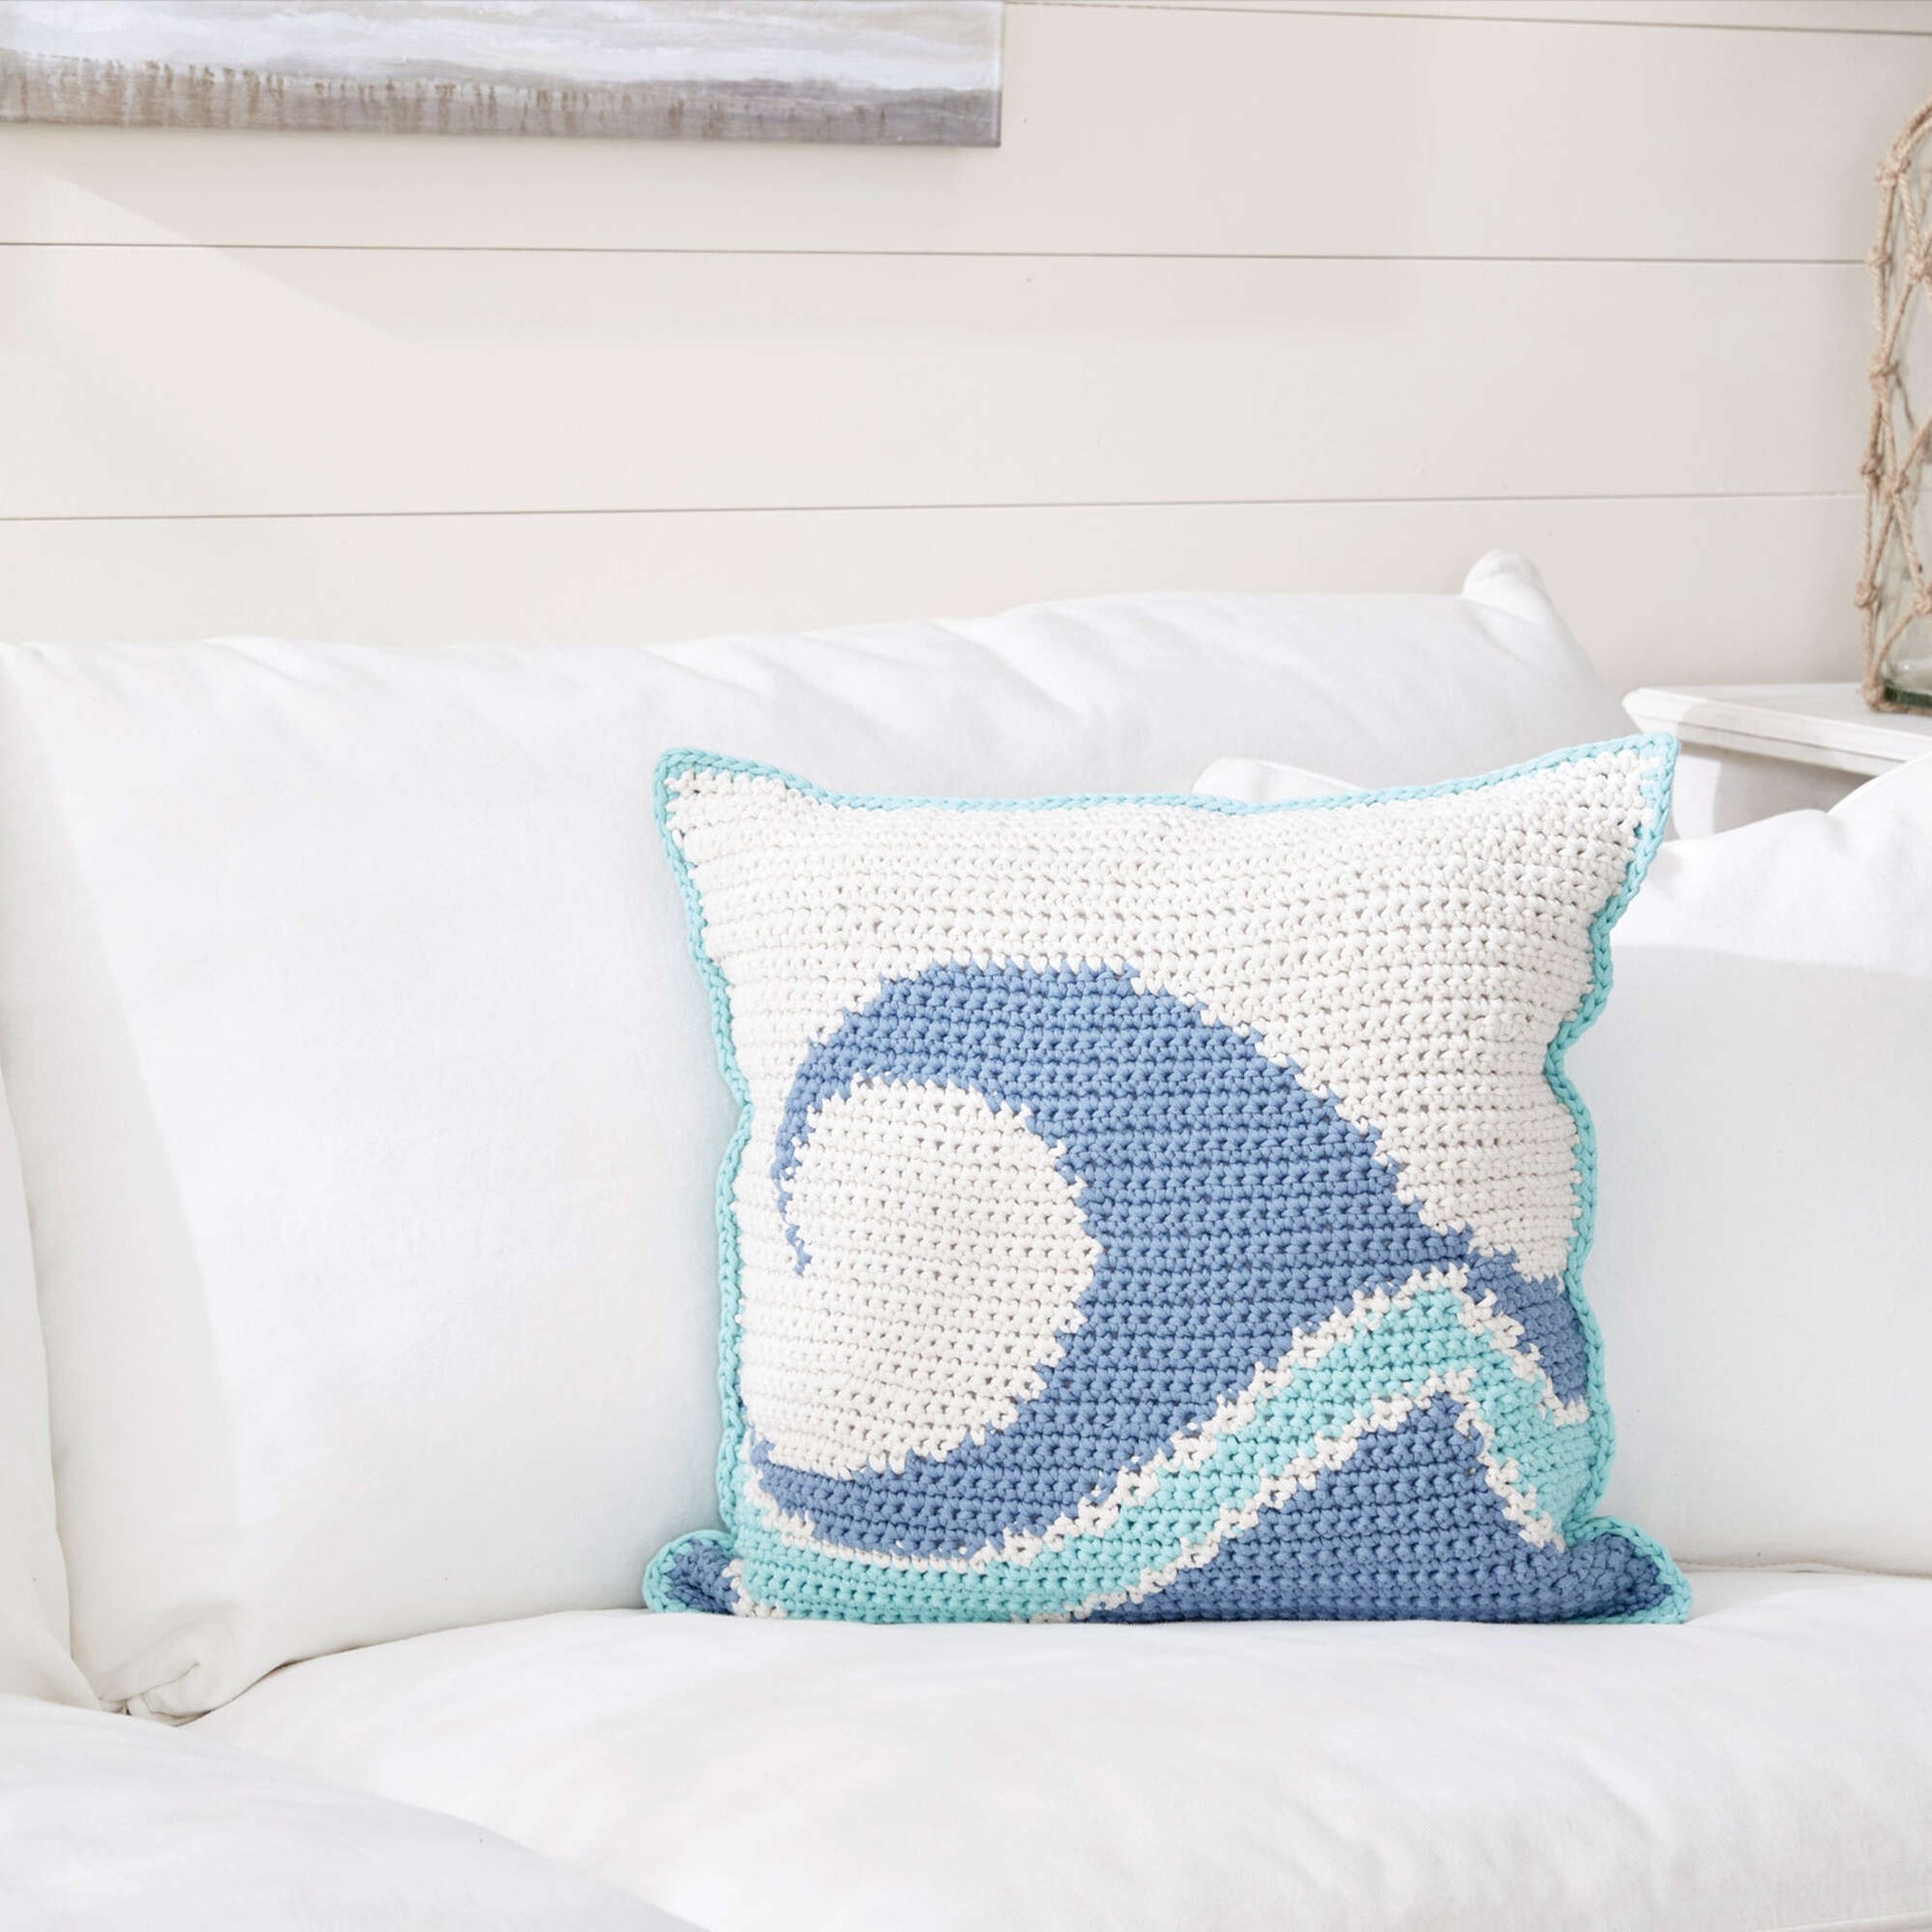 Bernat Catch A Wave Crochet Pillow Crochet Pillow made in Bernat Maker Home Dec yarn